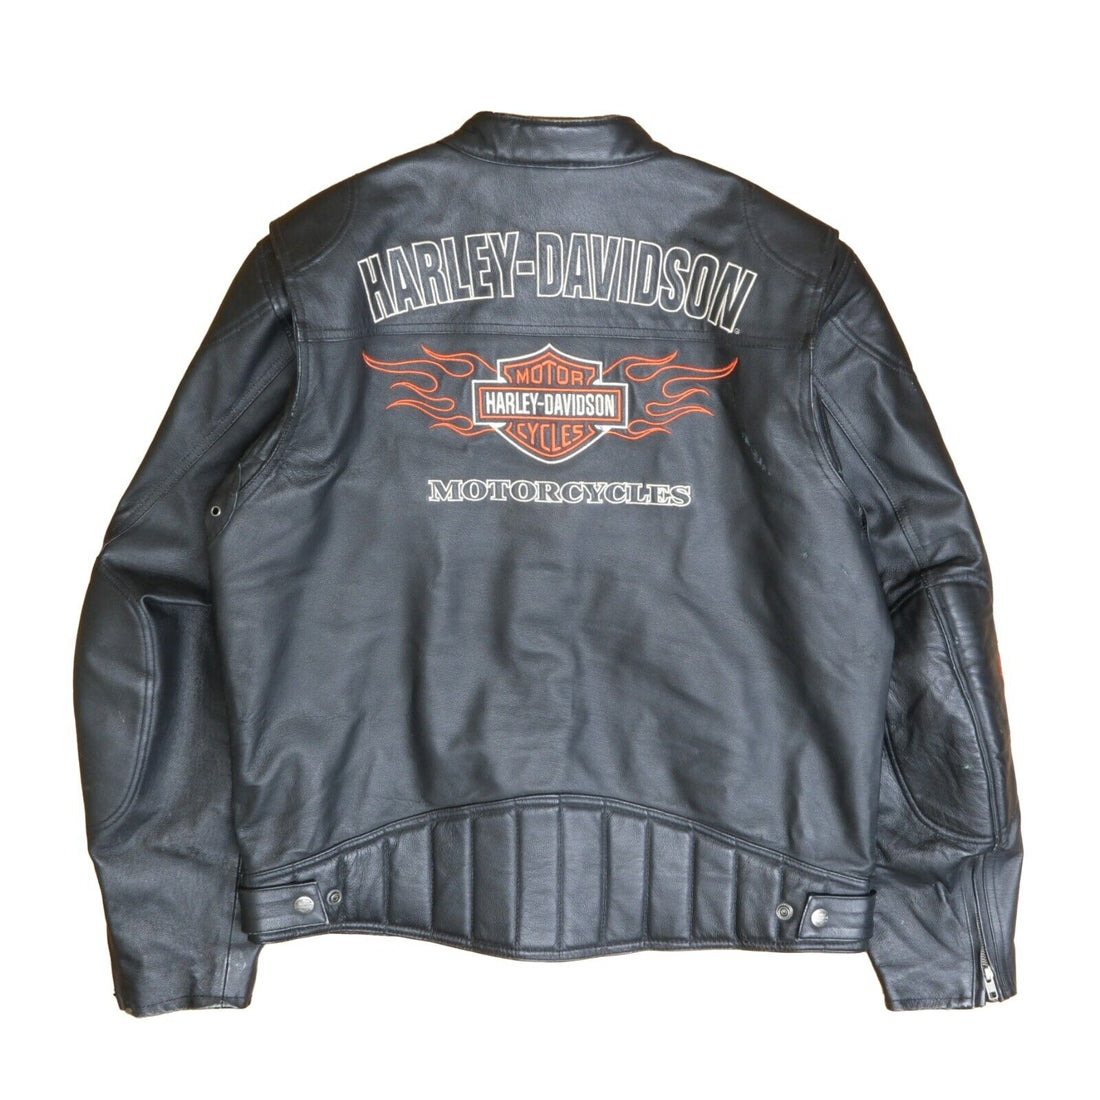 Vintage Harley Davidson Cafe Racer Motorcycle Leather Jacket Size Large Black